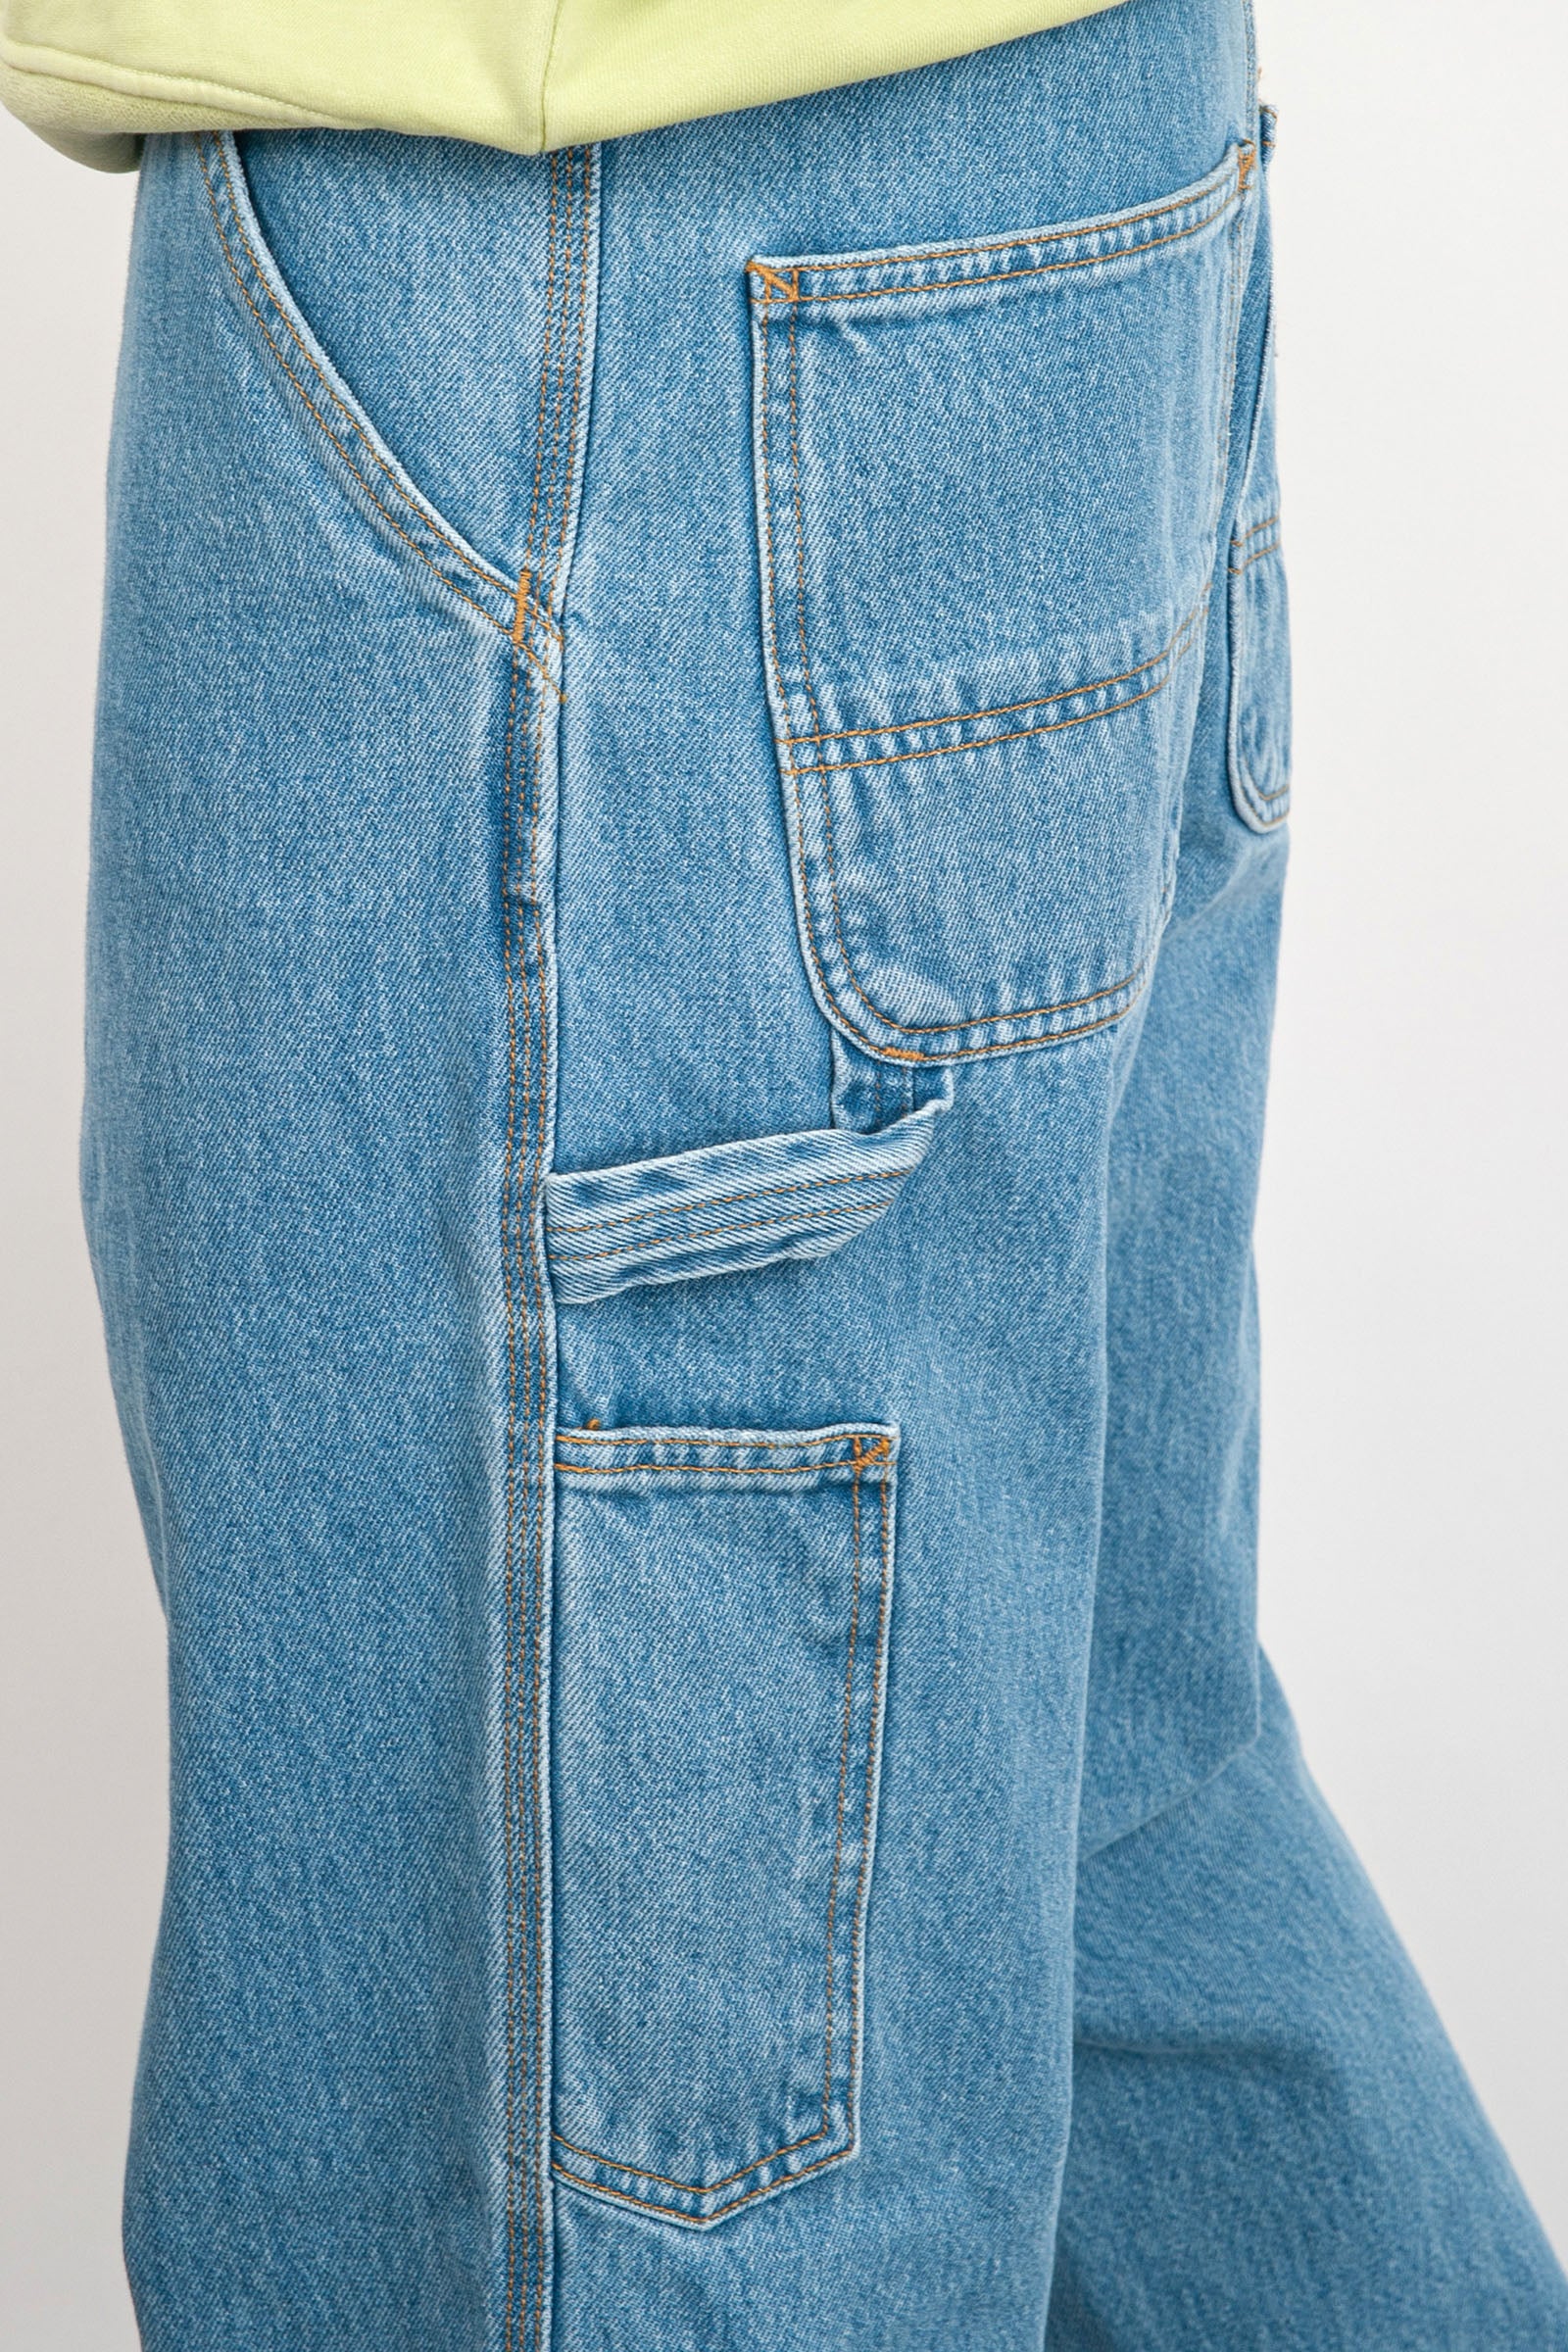 Carhartt Wip Jeans Single Knee Blu Chiaro Uomo - 5